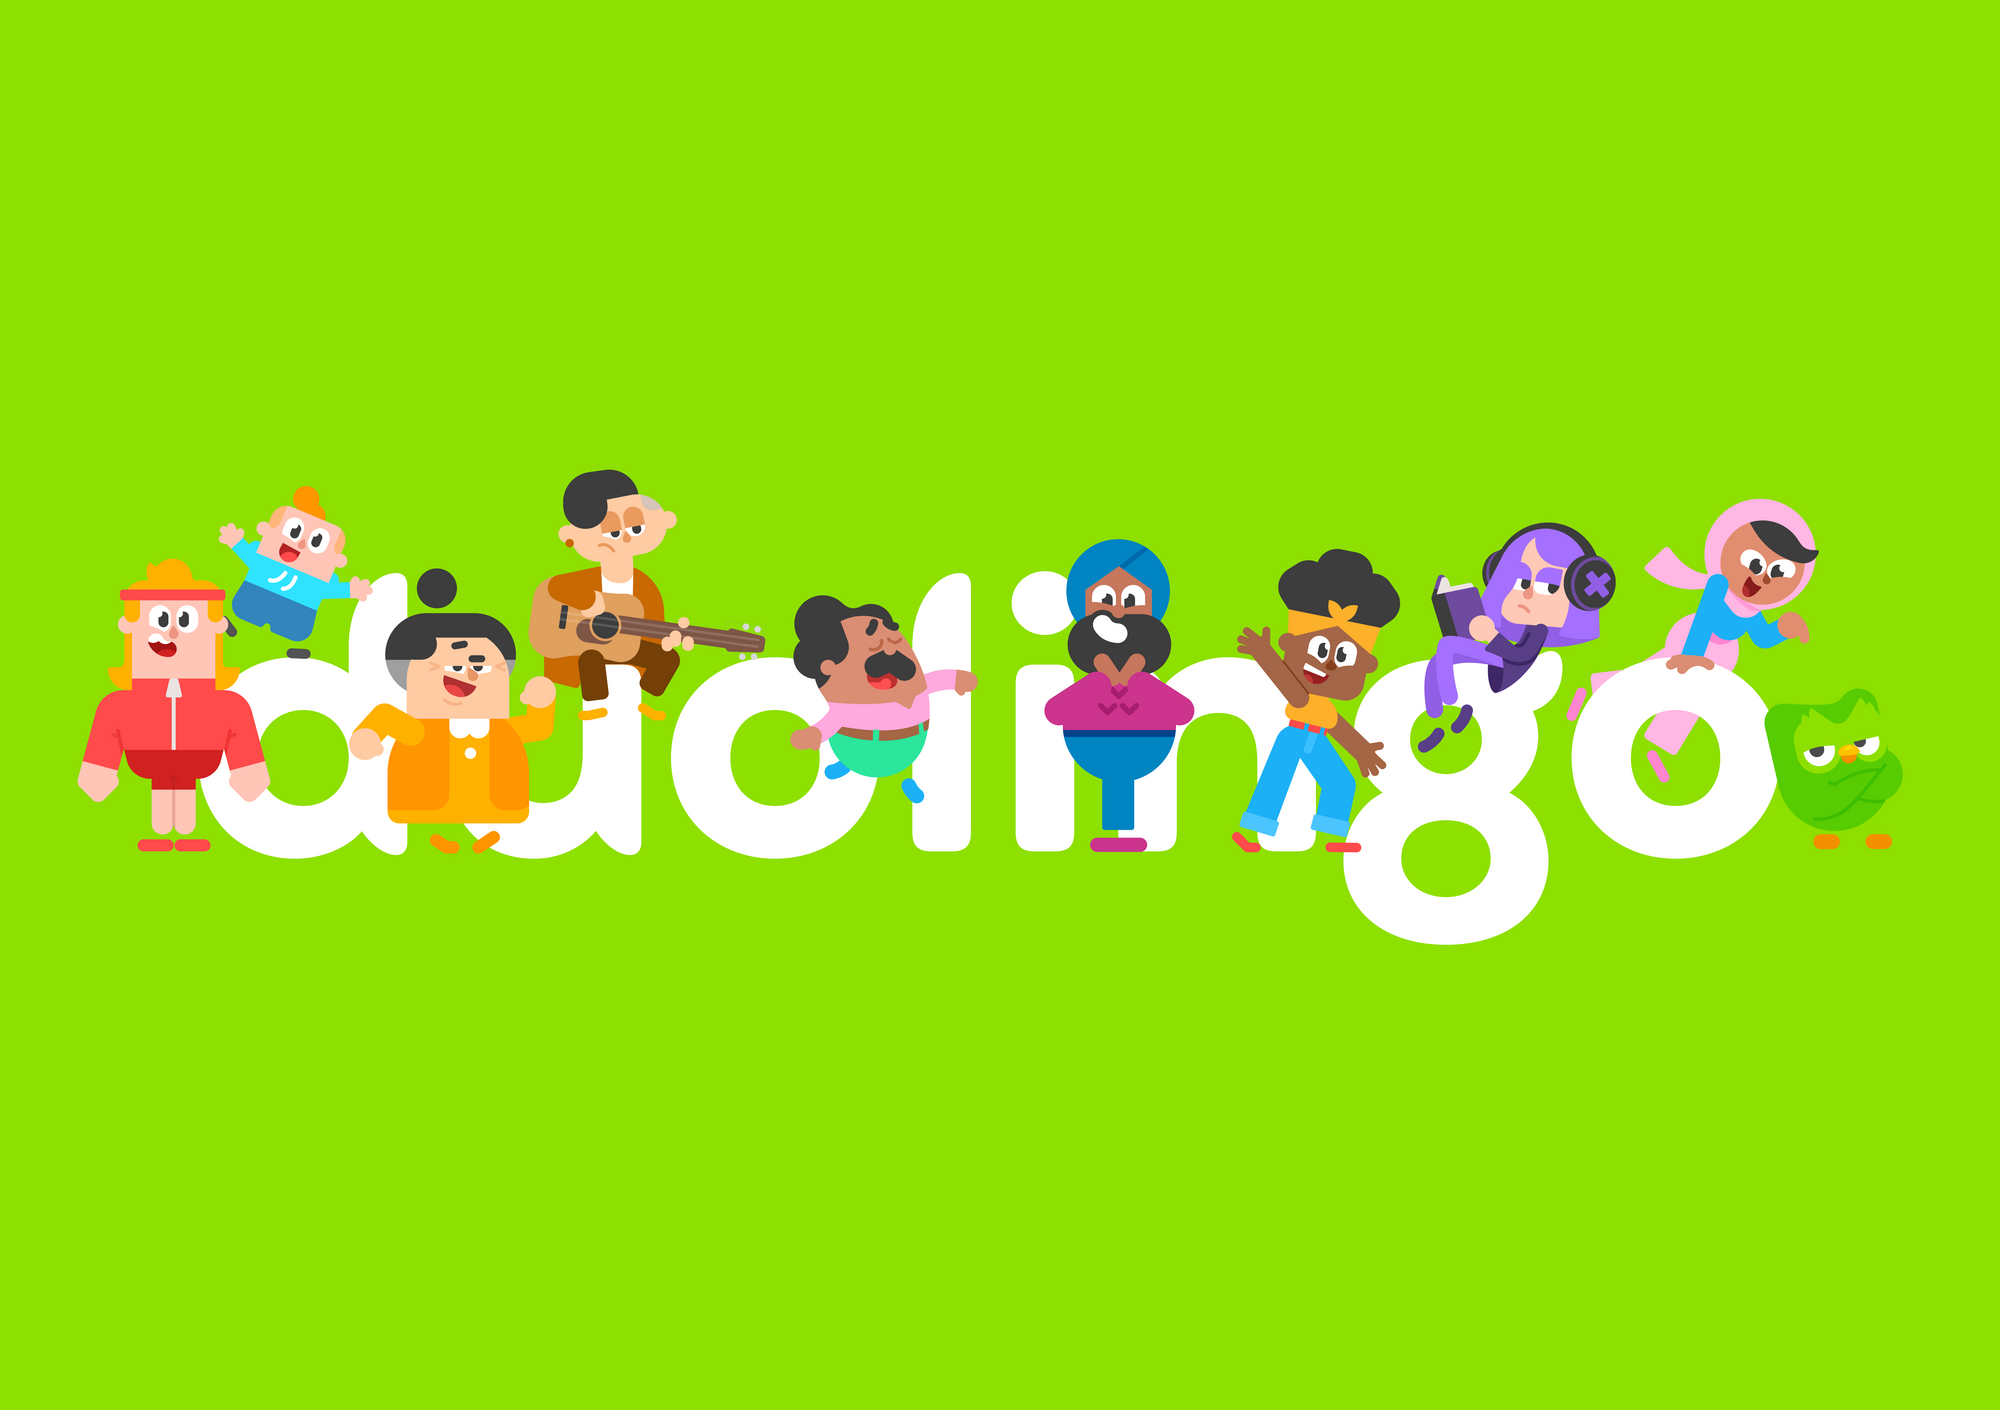 Duolingo: Revolutionary or Redundant?